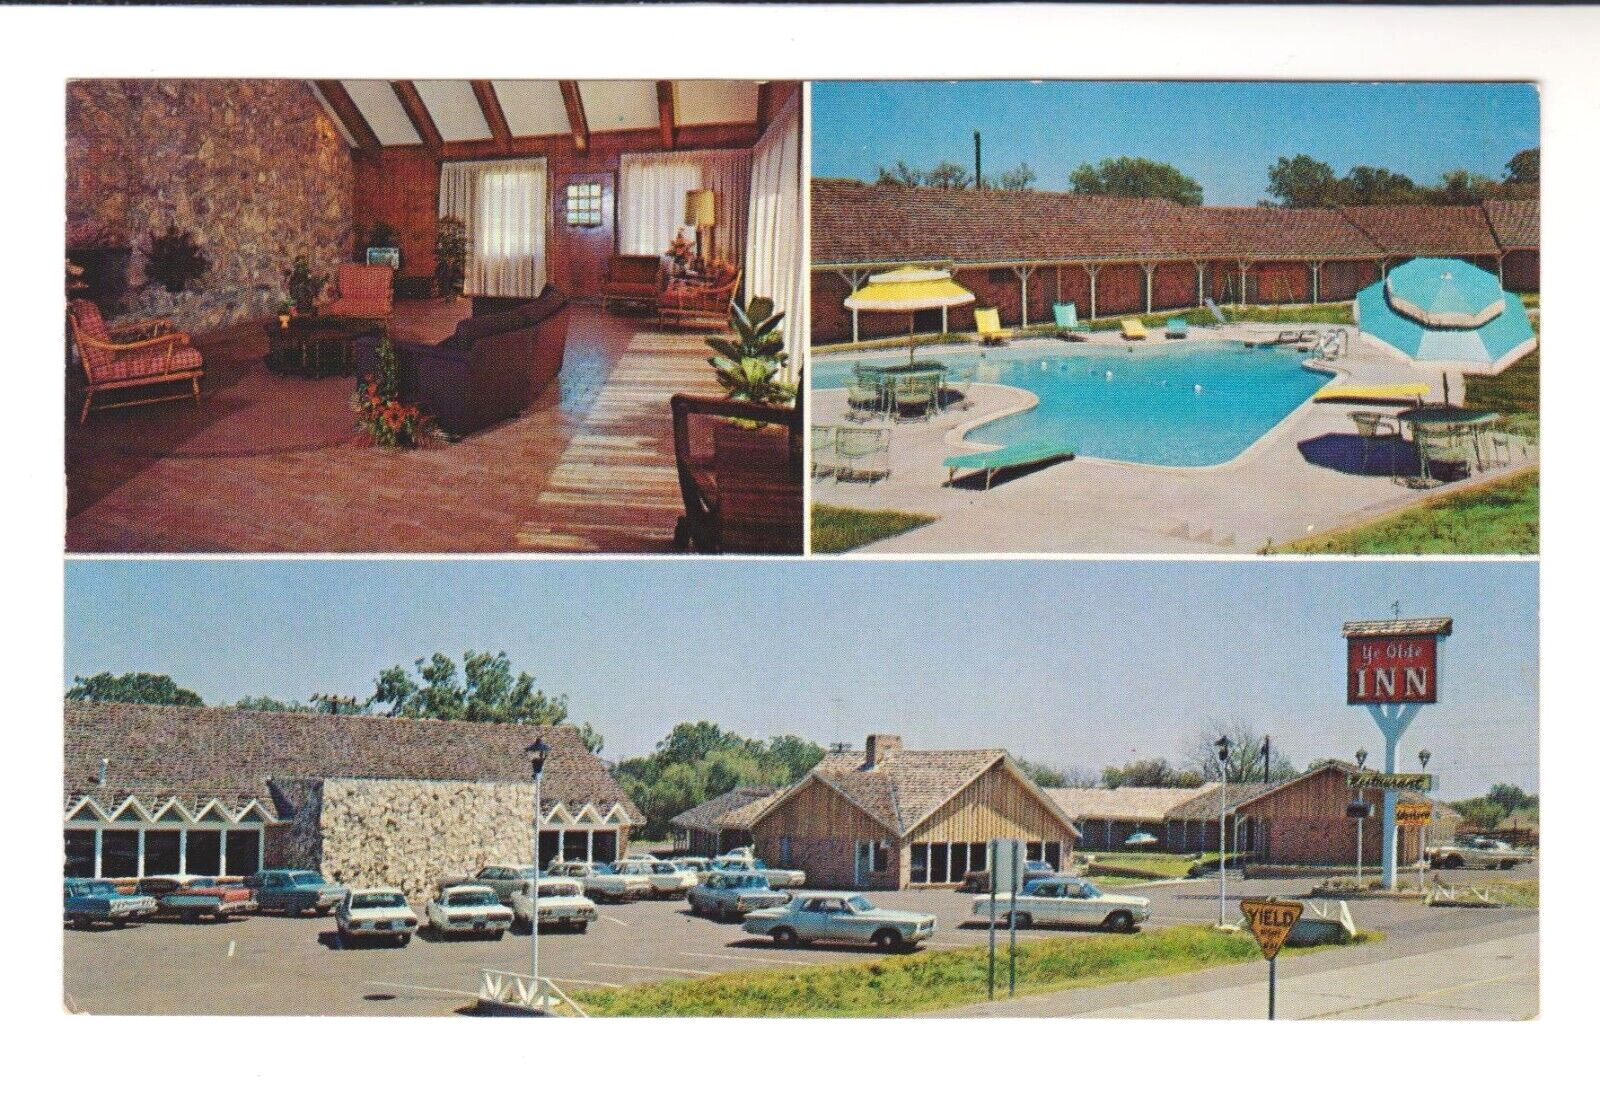 YE OLDE INN MOTEL & RESTAURANT, I-45, ENNIS, TEXAS – Swimming Pool - 1950s PC